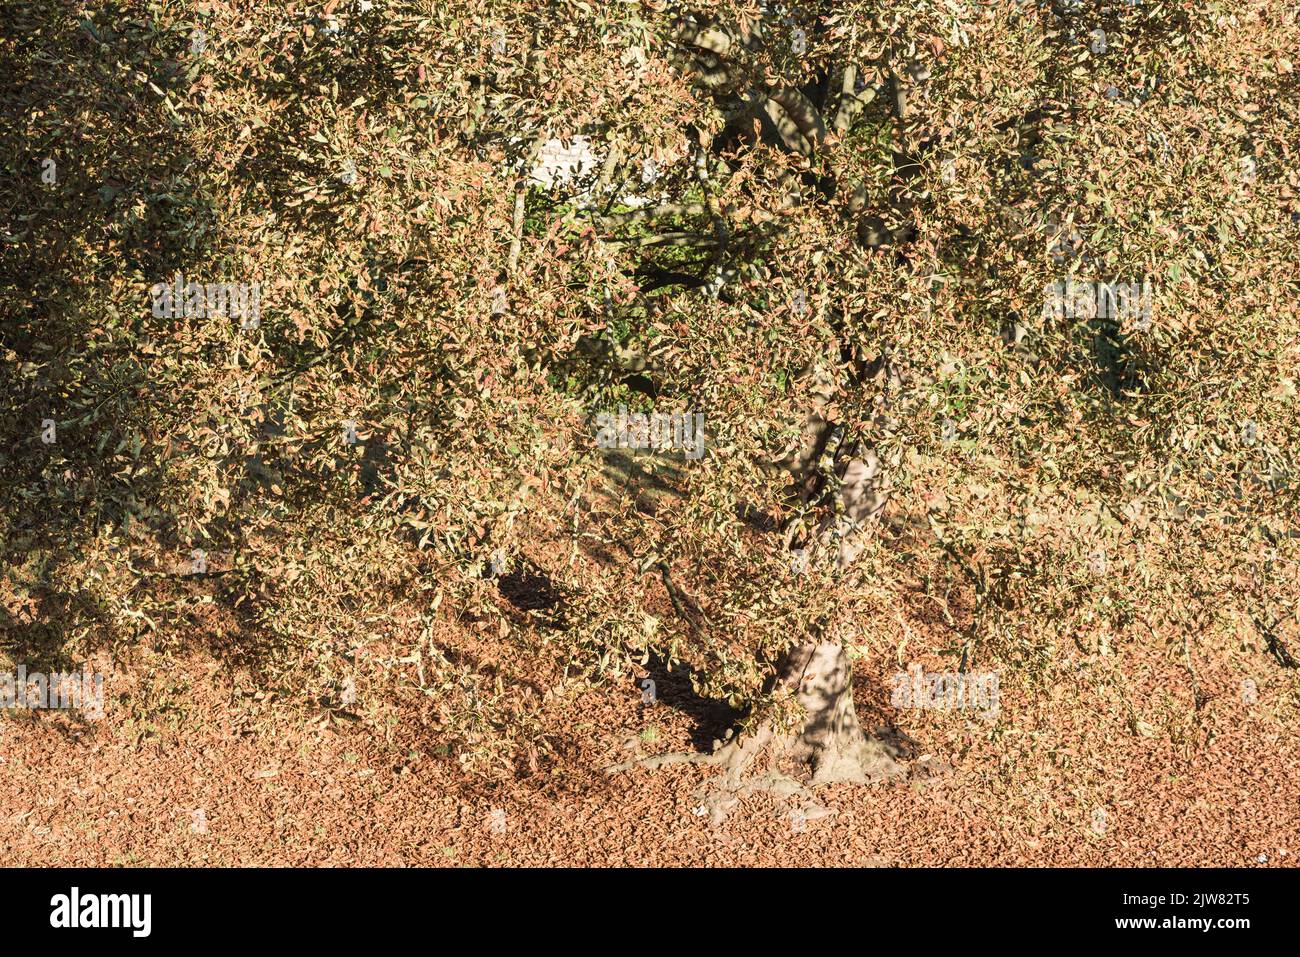 Horse Chestnut (Aesculus hippocastanum) tree in autumn Stock Photo